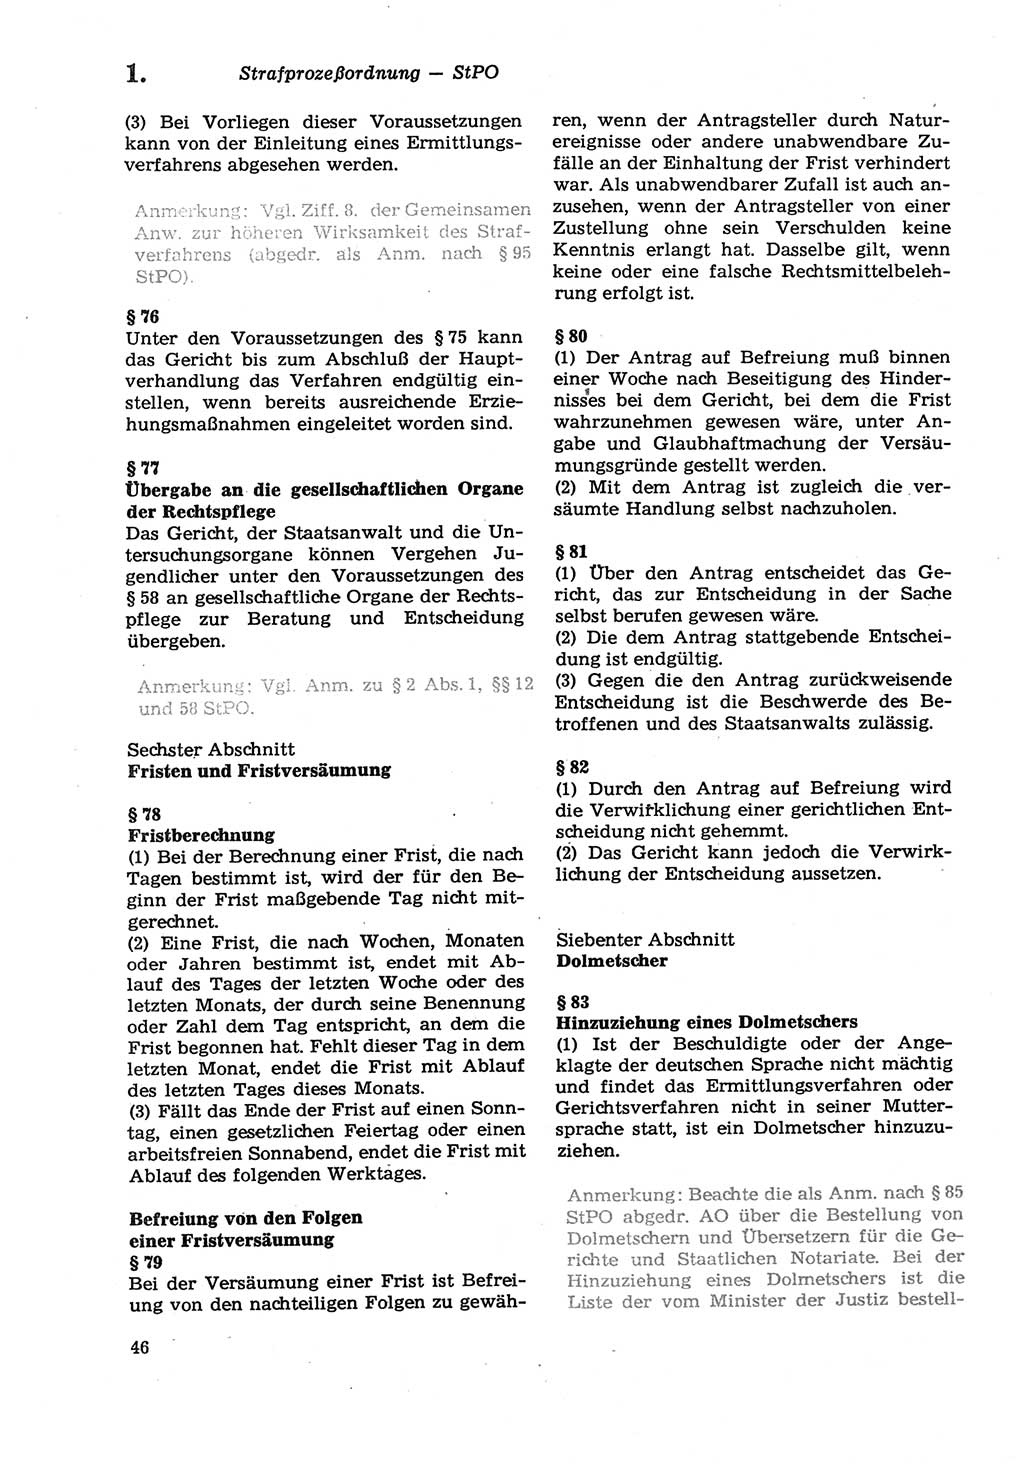 Strafprozeßordnung (StPO) der Deutschen Demokratischen Republik (DDR) sowie angrenzende Gesetze und Bestimmungen 1979, Seite 46 (StPO DDR Ges. Best. 1979, S. 46)